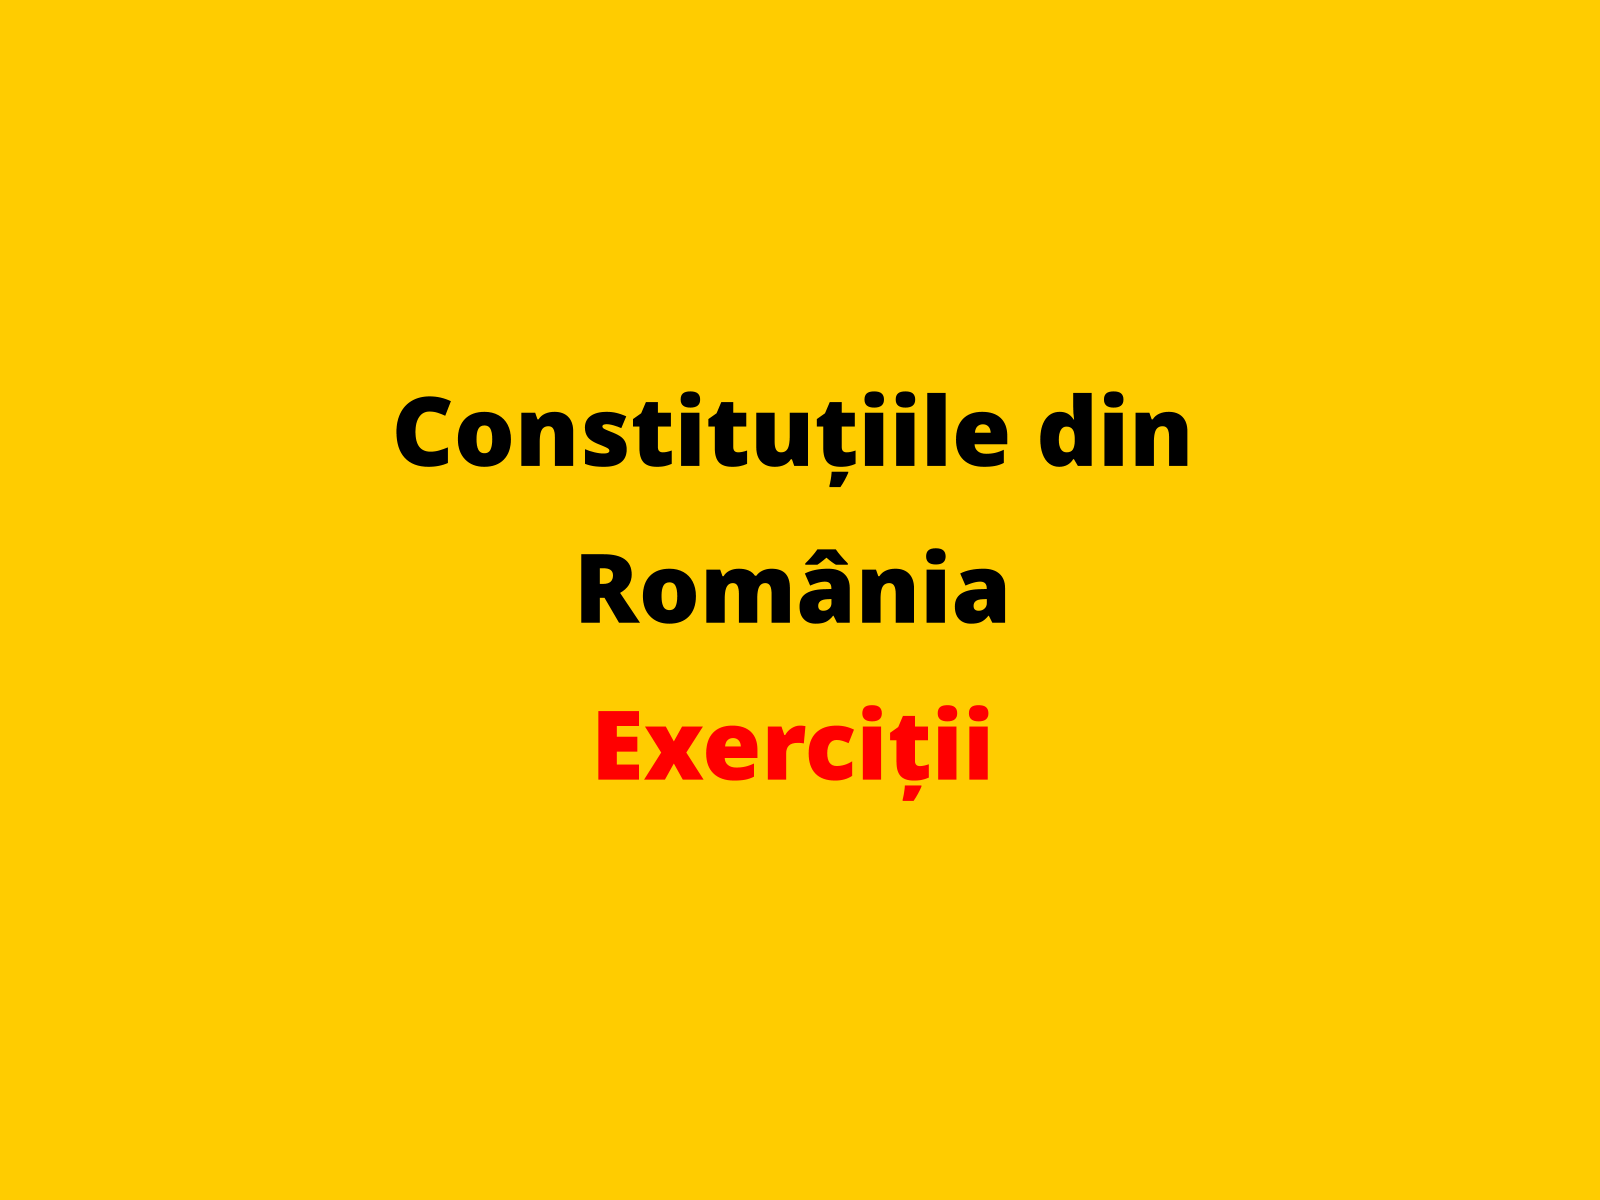 Menționați o caracteristică a Constituției din 1866 adoptată în statul român